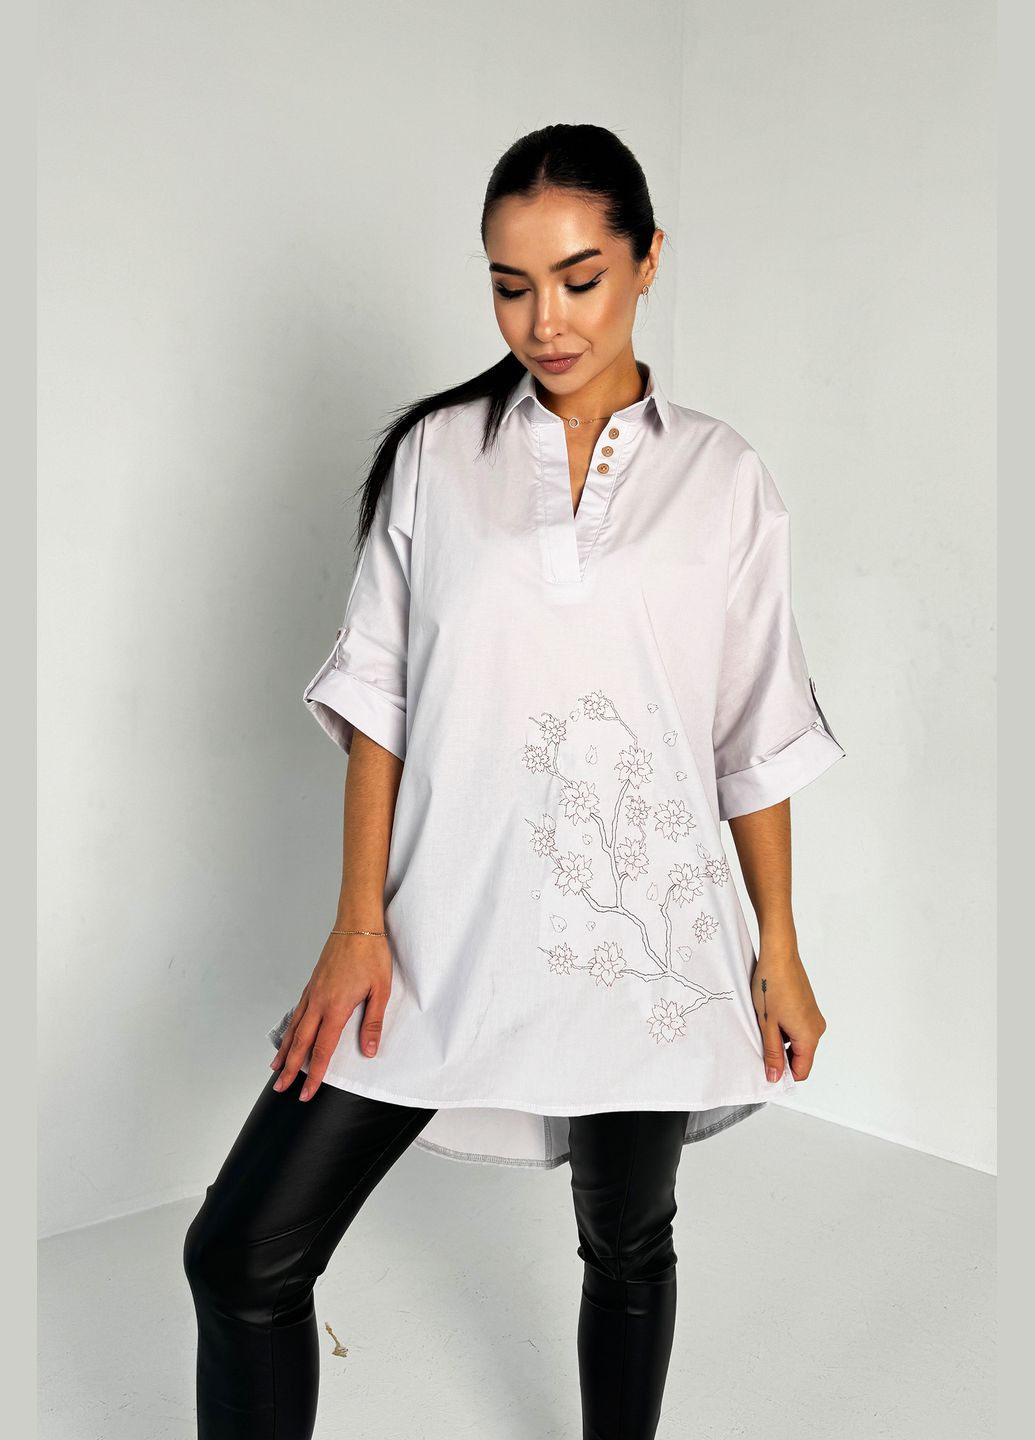 Светло-серая невероятная нежная и стильная блуза-туника с дизайнерской вышивкой INNOE Блуза-туніка